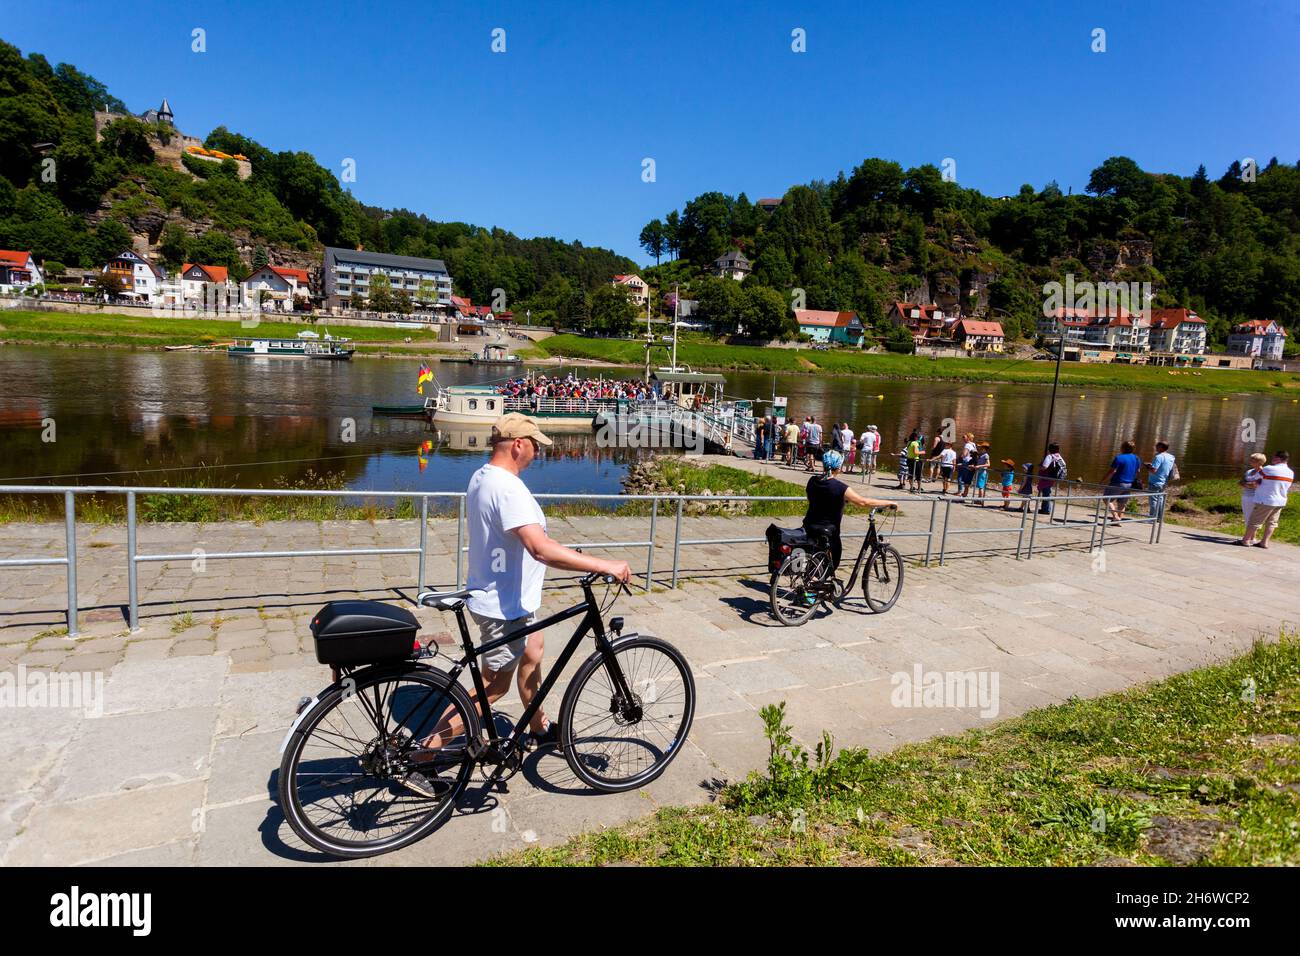 La Svizzera sassone è ricca di turisti, turisti della valle del fiume Elba, persone in attesa di imbarcare il traghetto a Kurort Rathen, Germania, persone che spingono le biciclette Foto Stock